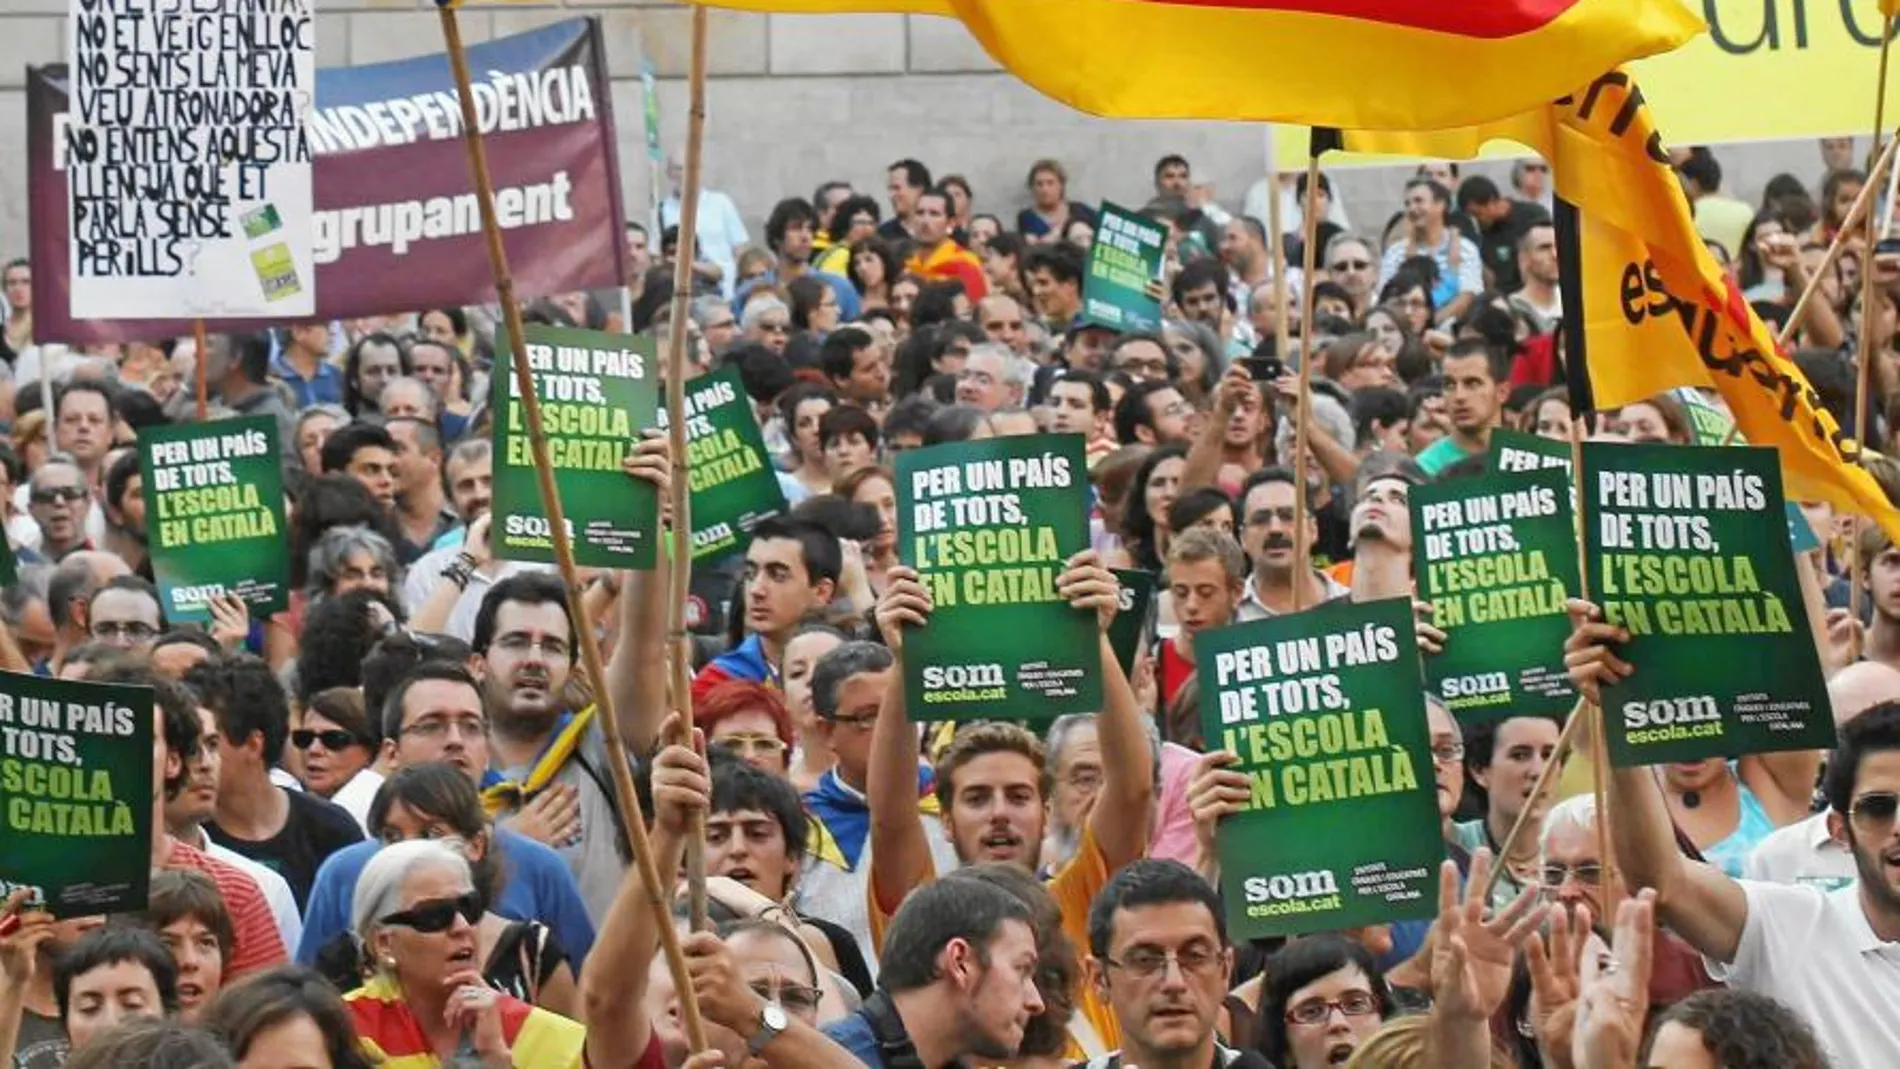 En sus manifestaciones, los independentistas aprovechan siempre para reivindicar la inmersión lingüística en el catalán